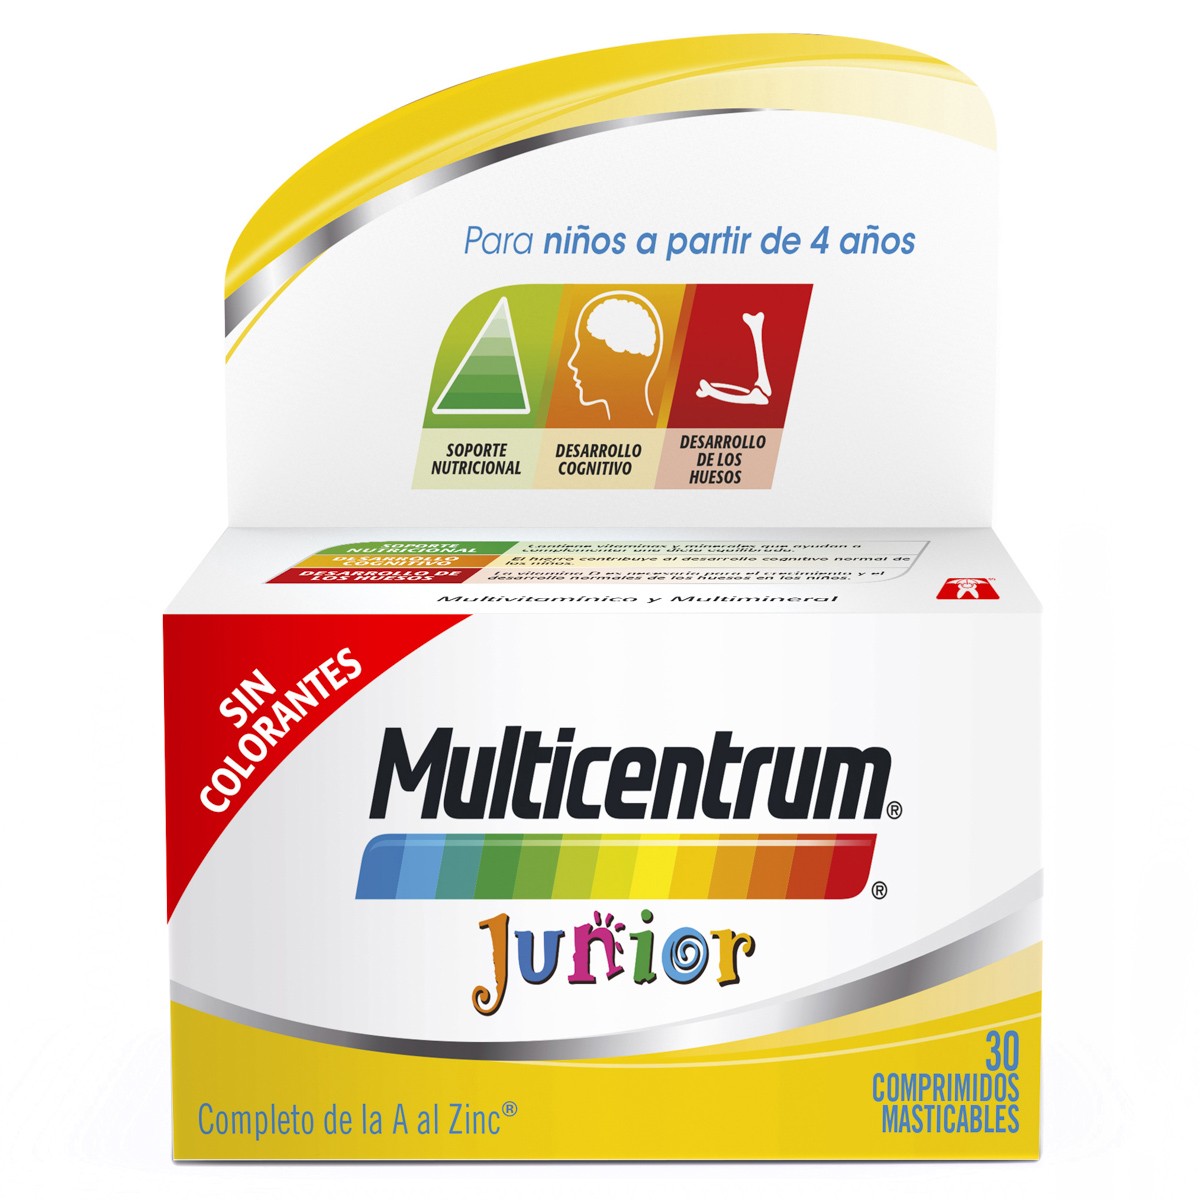 Multicentrum junior 30 comprimidos masticables